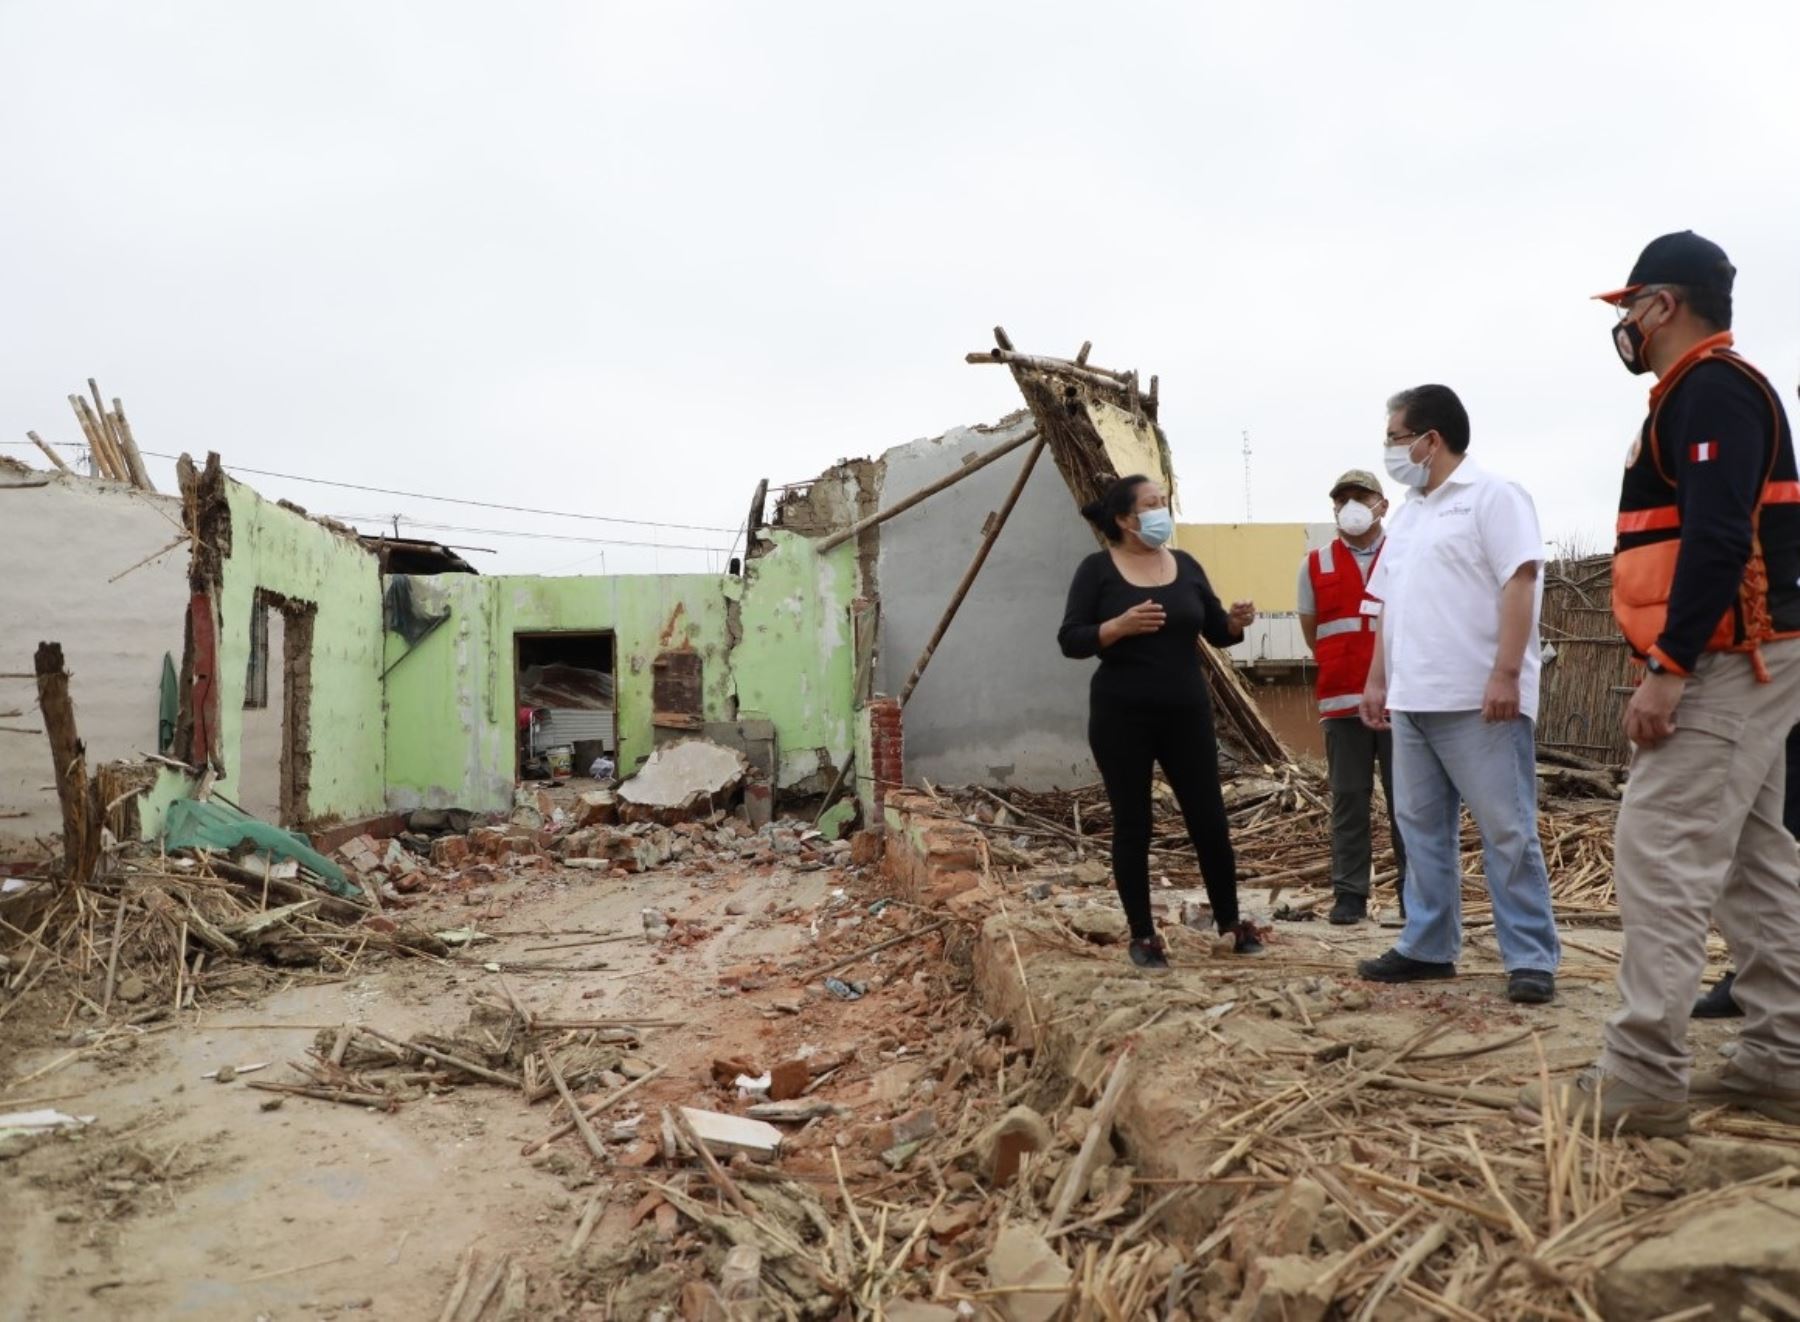 La Contraloría pide acelerar el plan de reconstrucción y rehabilitación de las zonas afectadas por el fuerte sismo de magnitud 6.1 que afectó a Sullana y otras provincias de Piura, y atender a los damnificados por este evento. ANDINA/Difusión